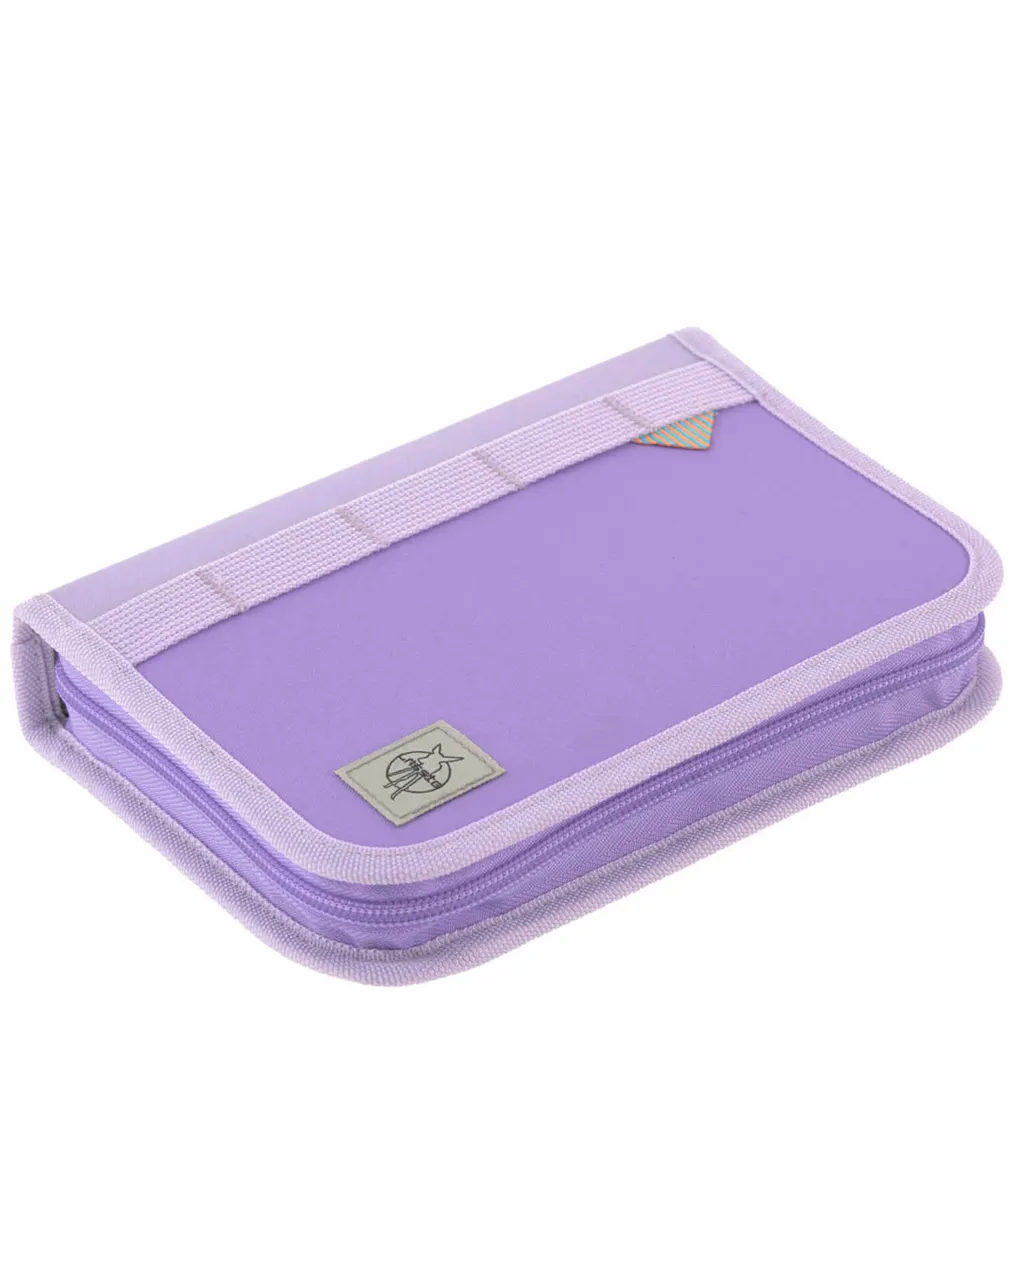 Schulranzen-Set BOXY UNIQUE (30x25x42) 7-teilig in violet/lavender